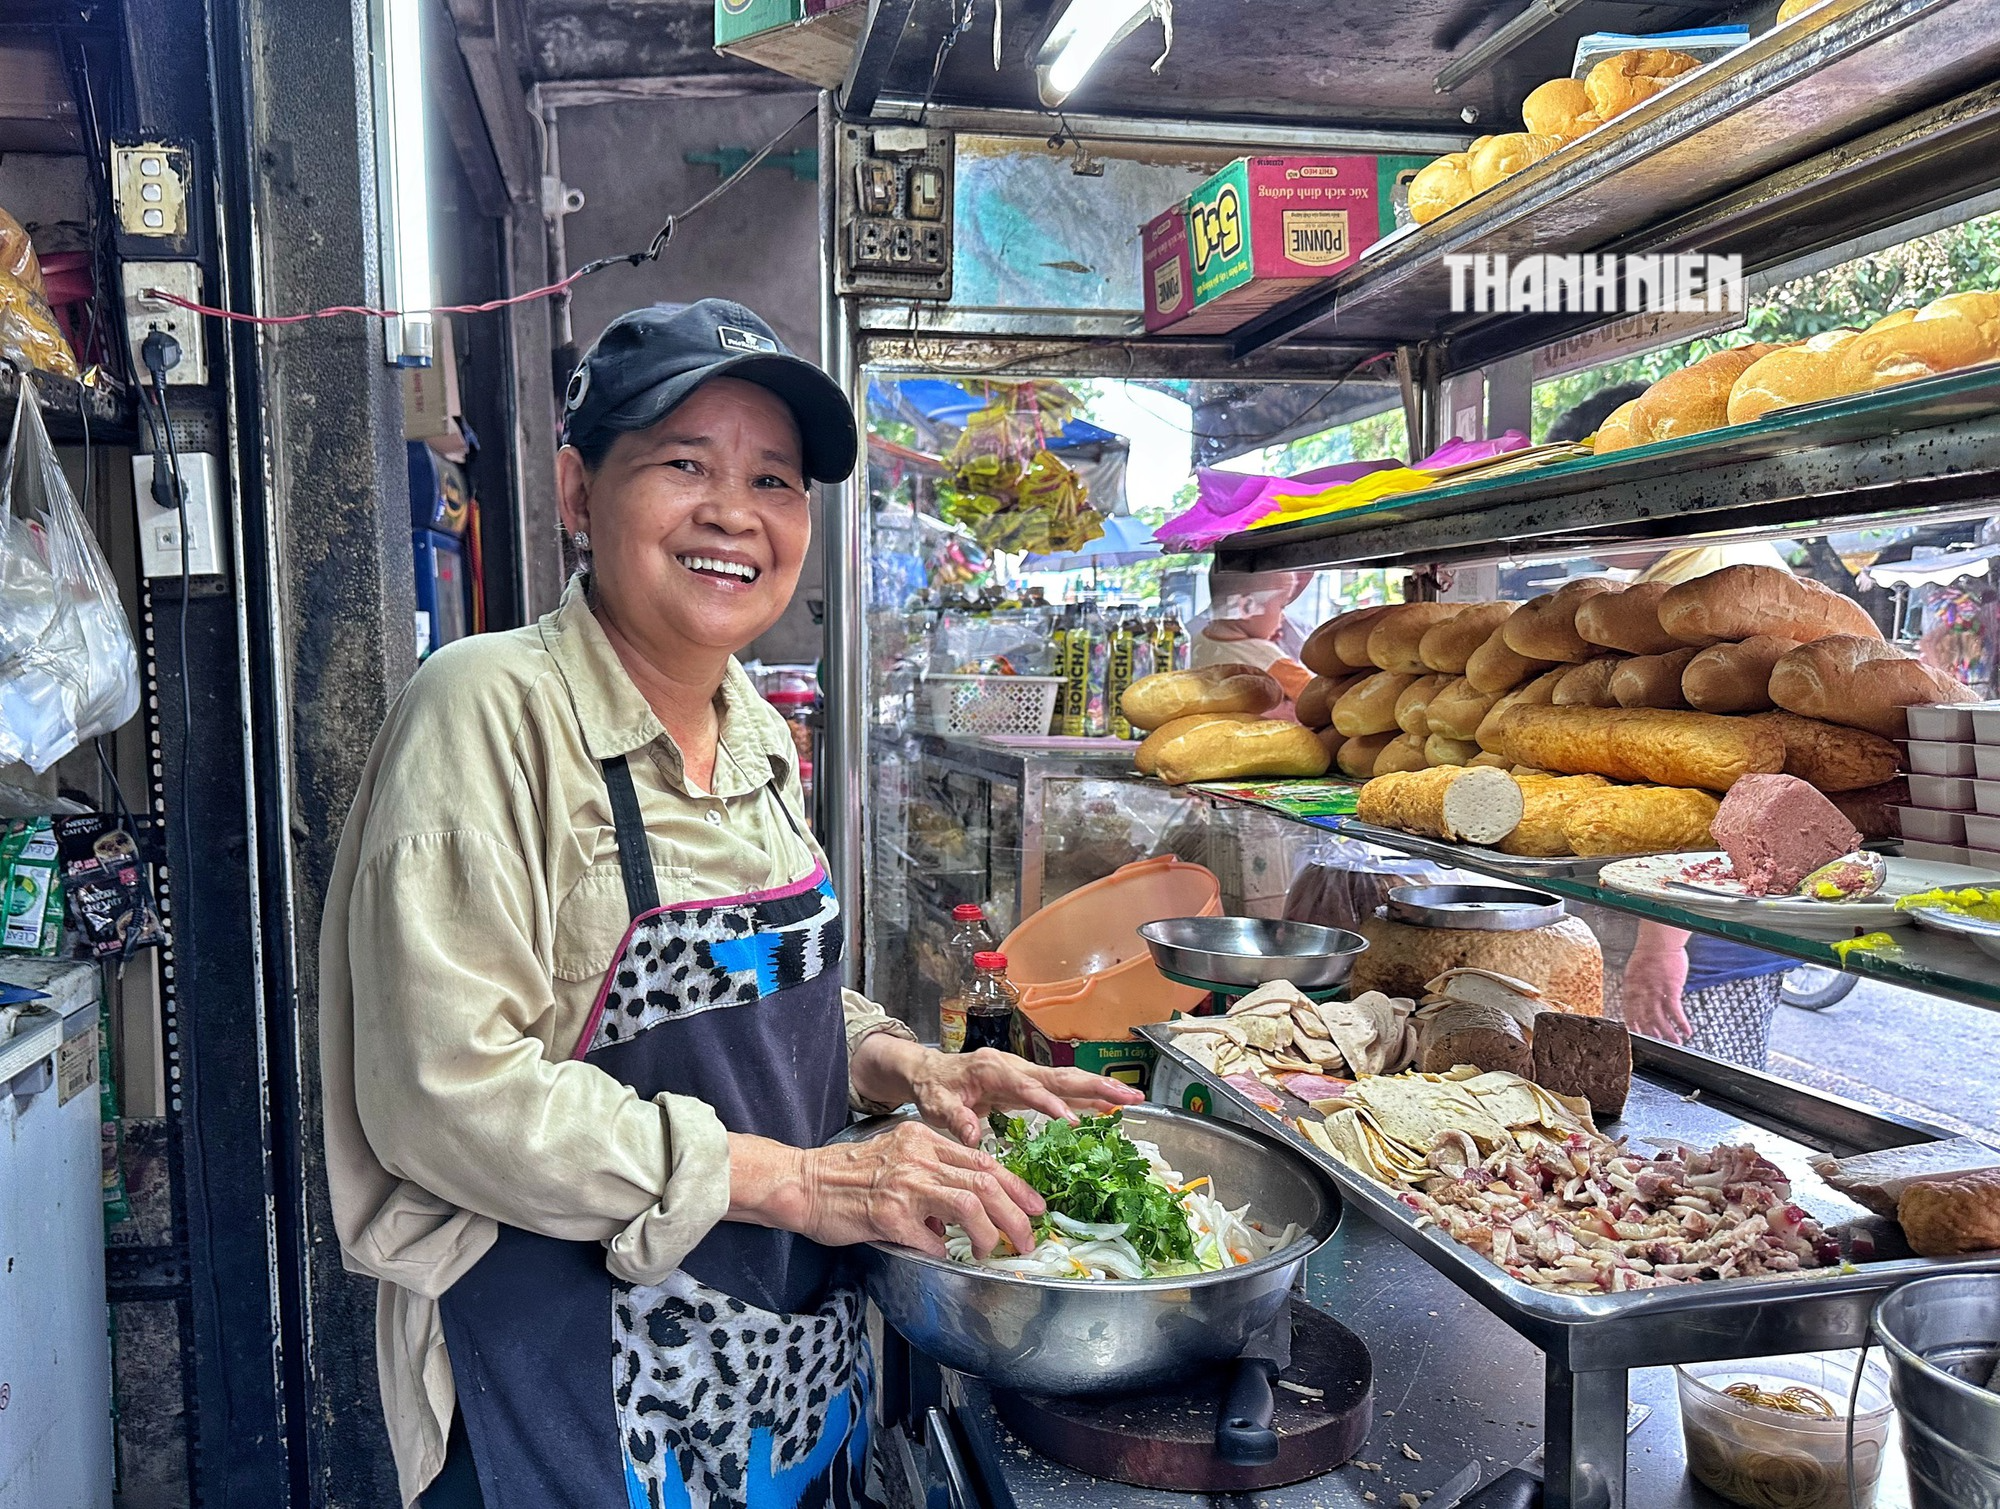 Bà chủ bán bánh mì hơn 50 năm: 'Hà tiện' để mua… 9 căn nhà Sài Gòn - Ảnh 1.